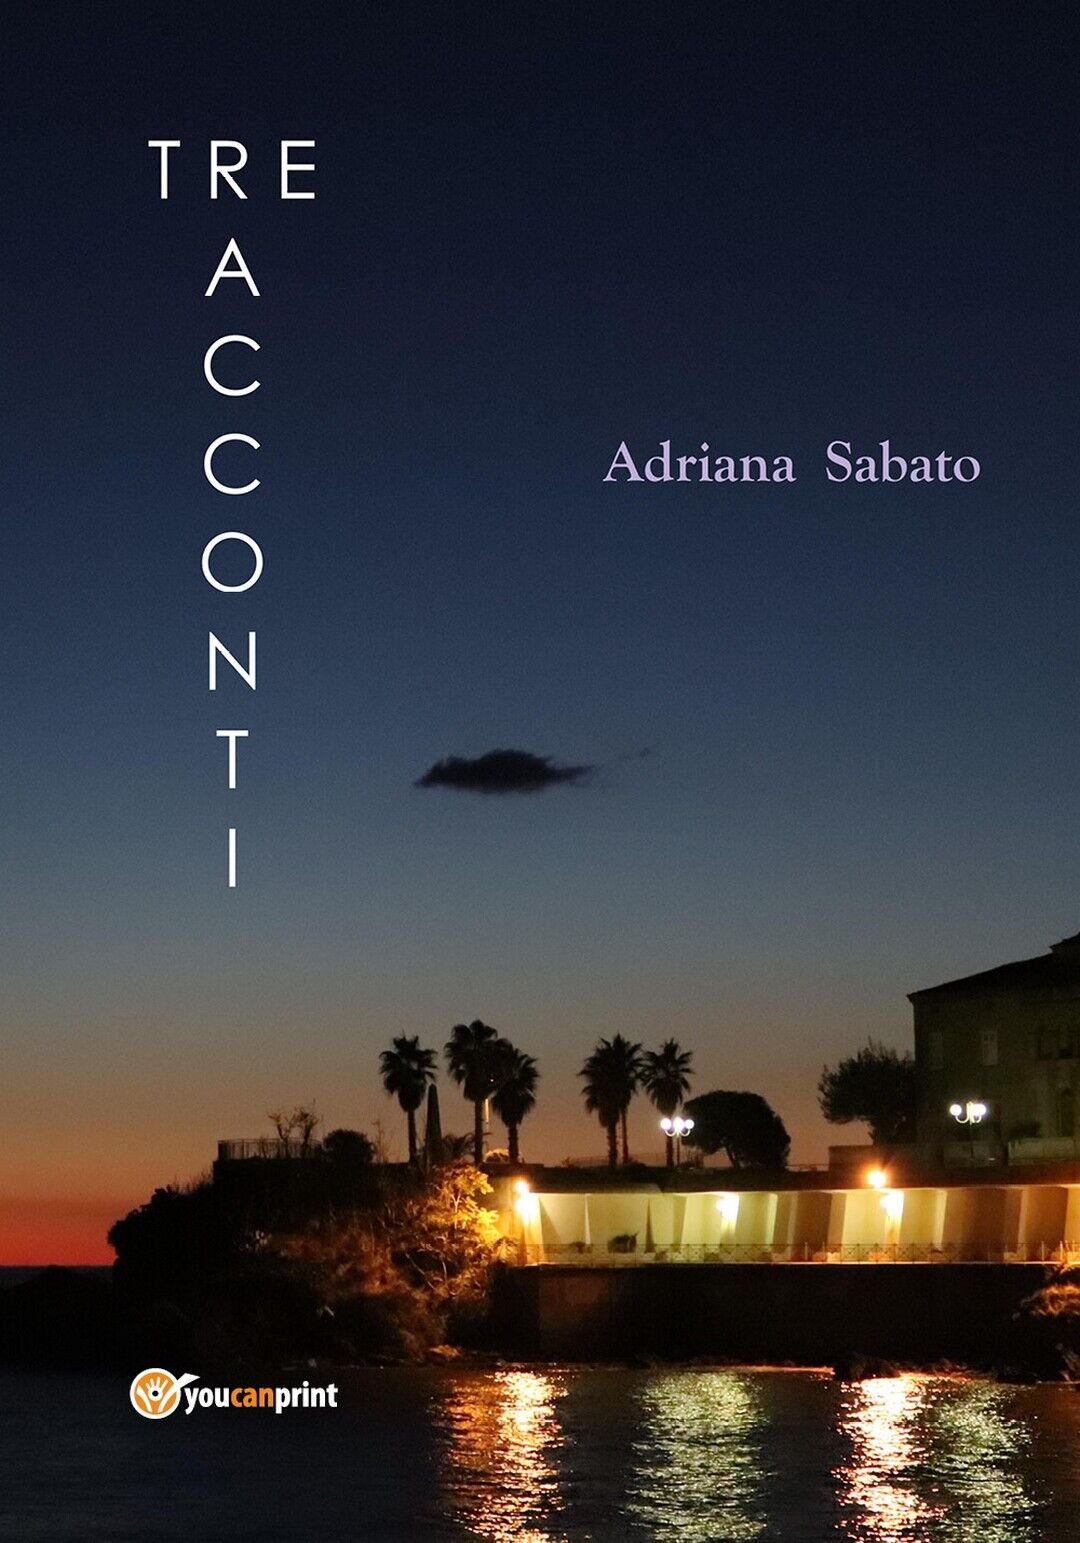 La vita, la cronaca - Tre racconti  di Adriana Sabato,  2019,  Youcanprint